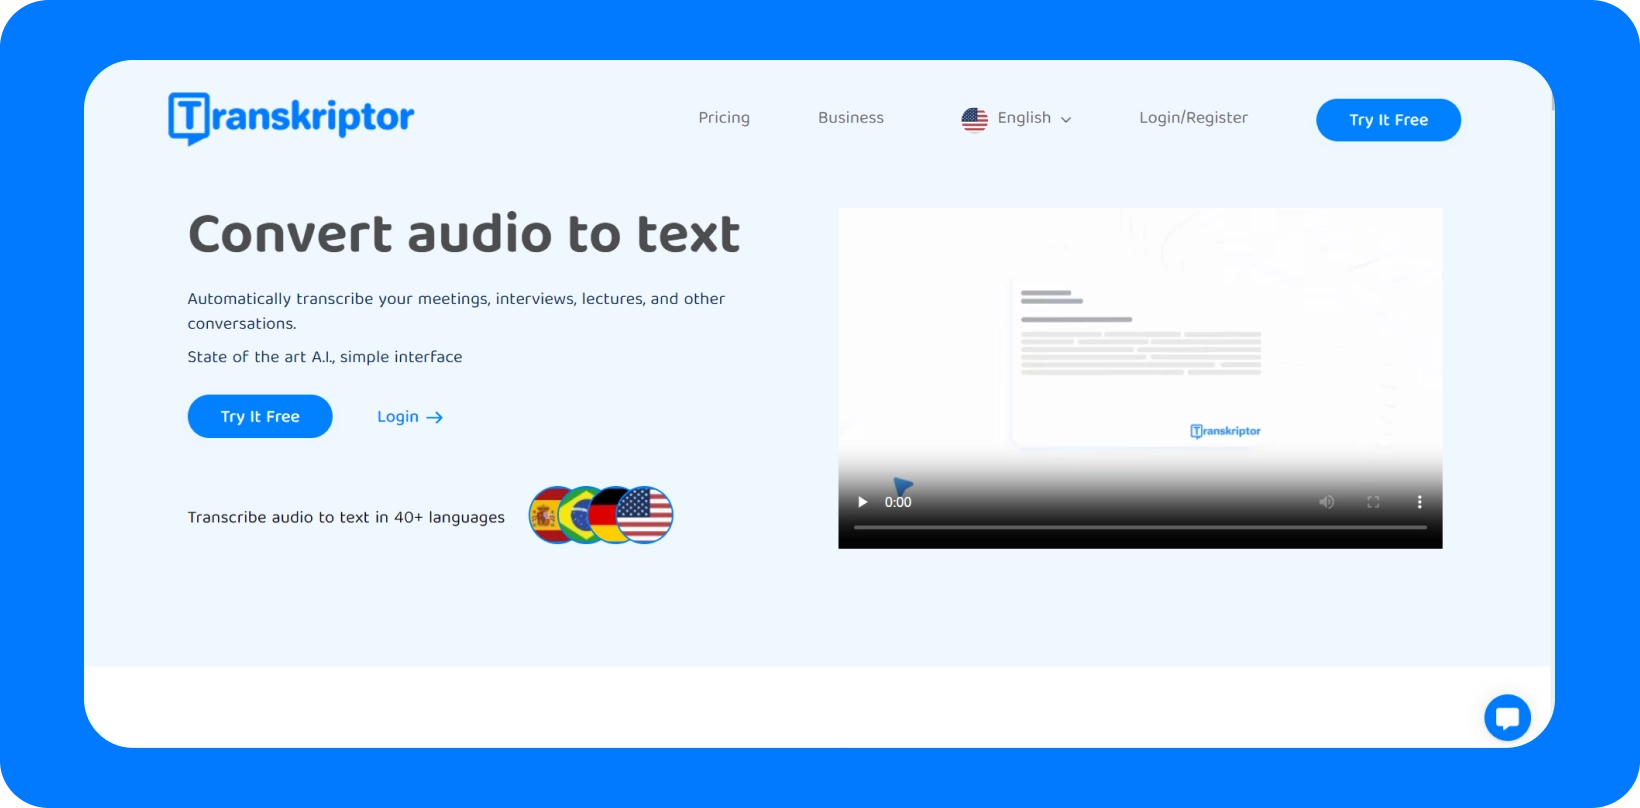 Интерфейс Transkriptor, демонстрирующий услугу «Преобразование аудио в текст» с поддержкой нескольких языков.